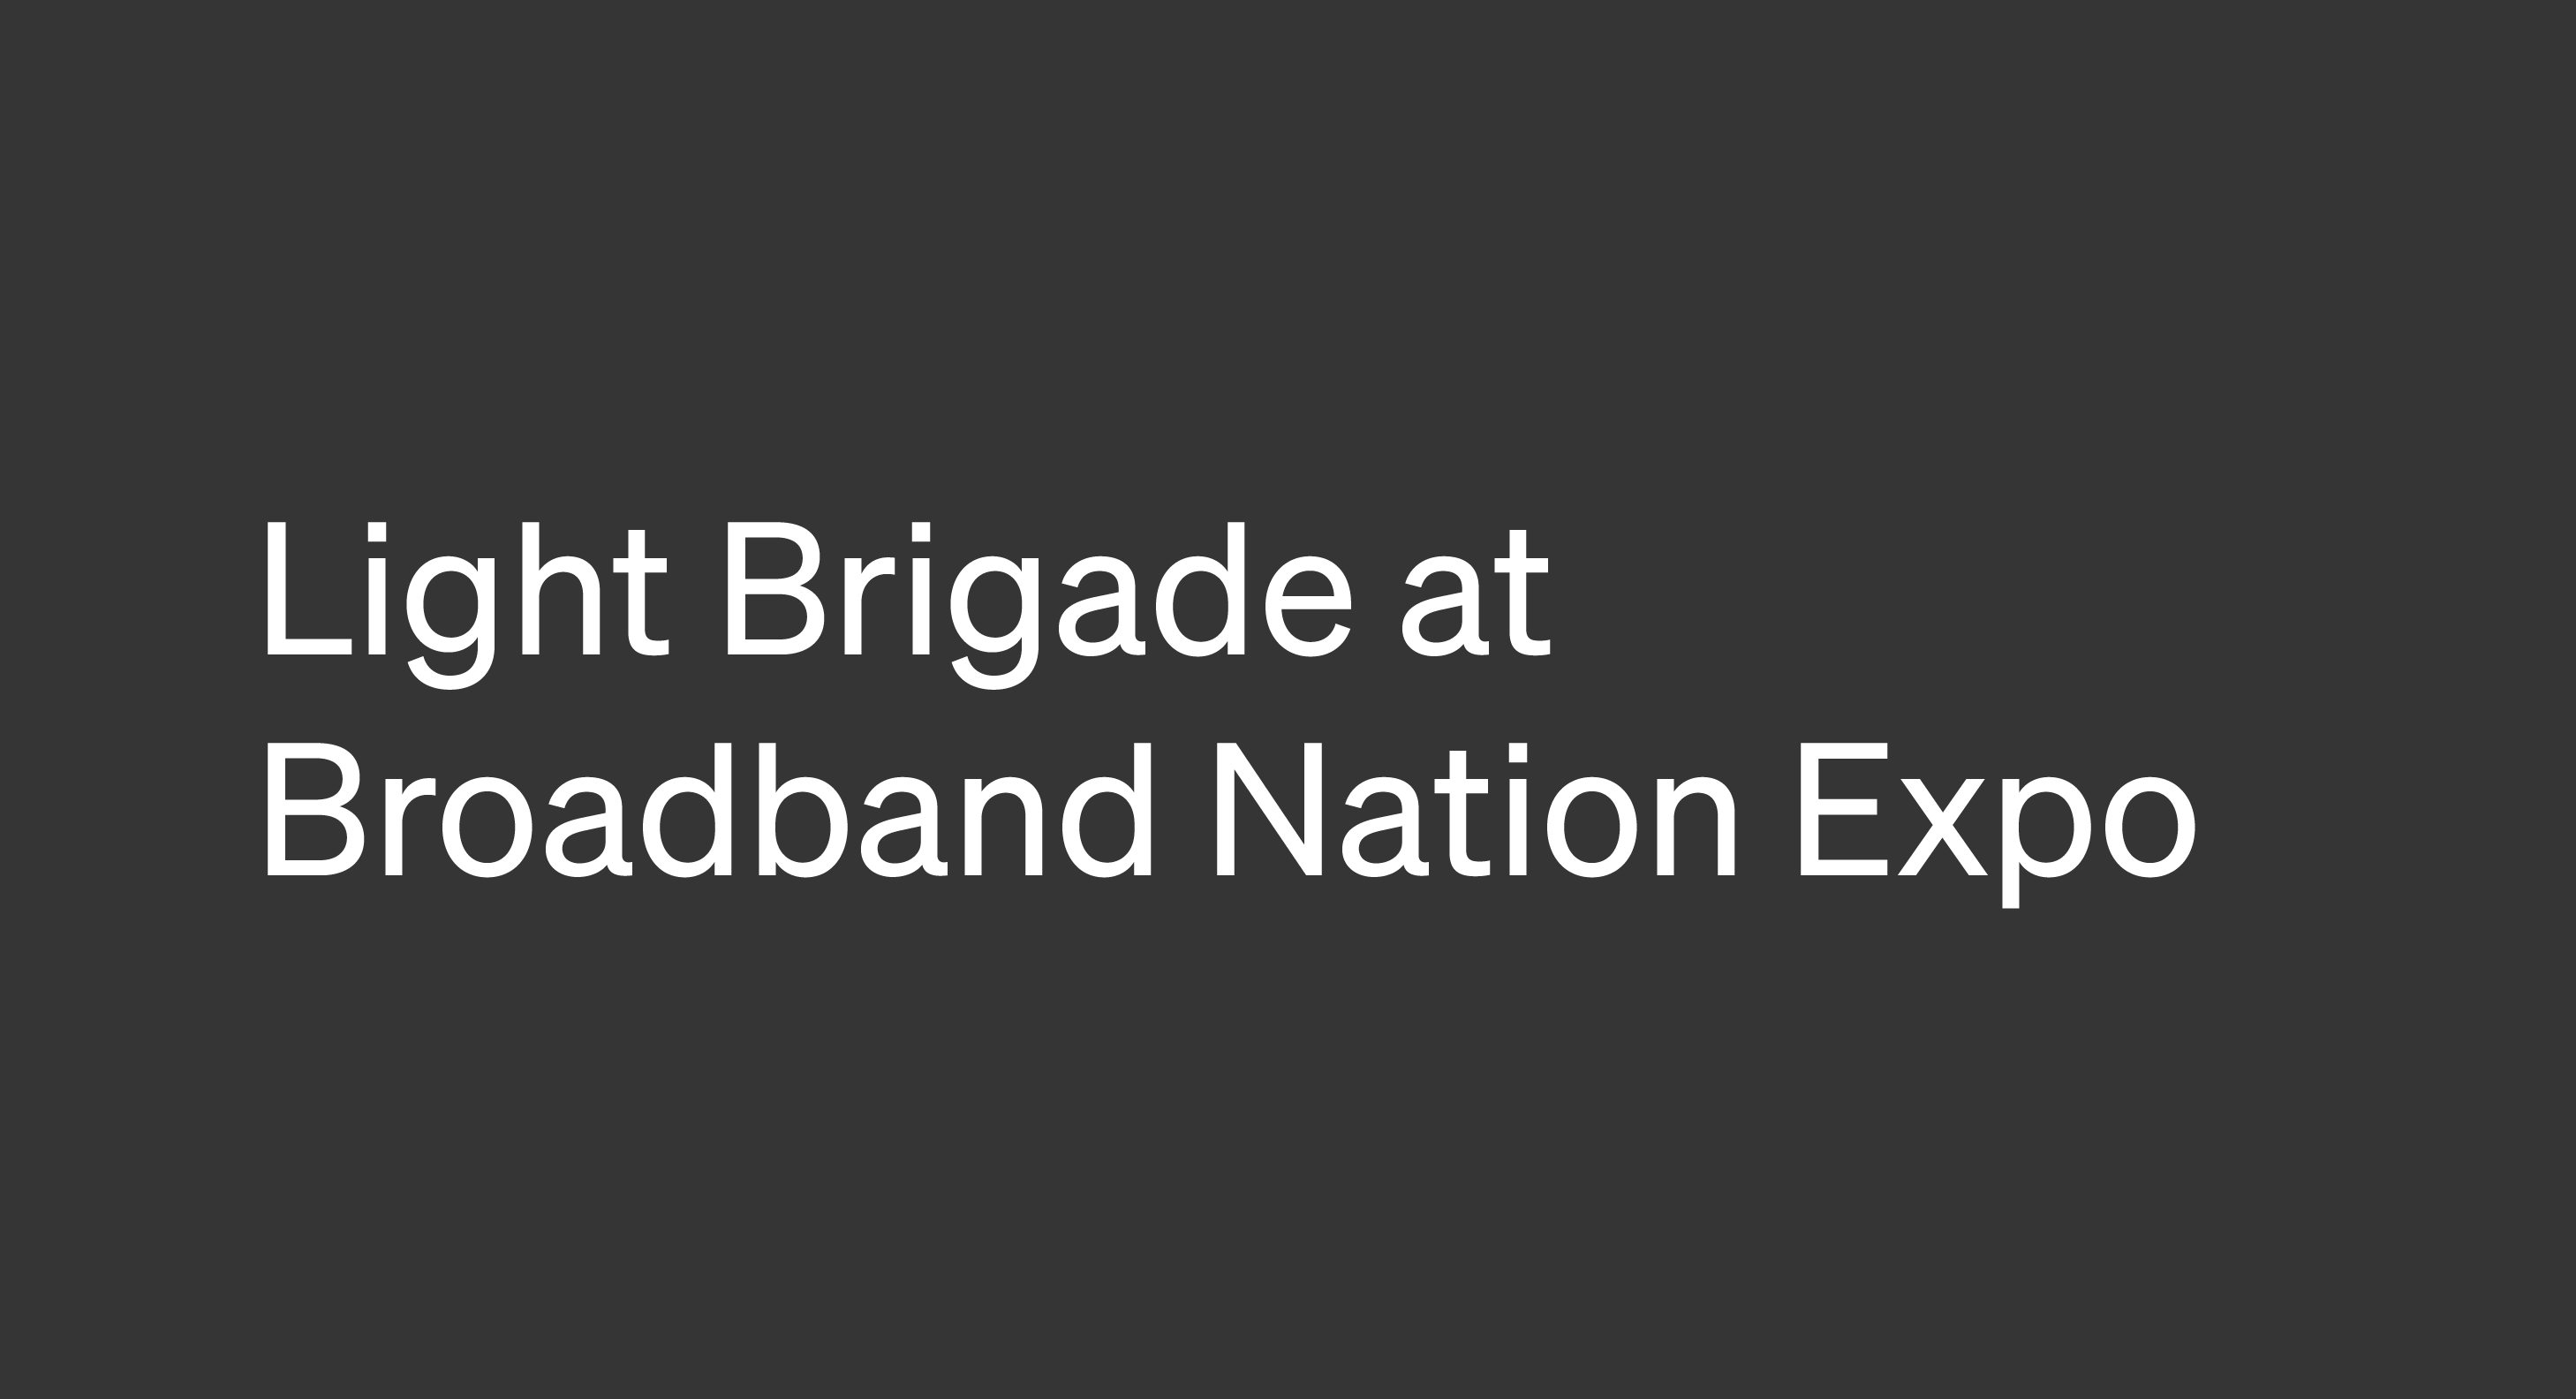 Broadband Nation Expo